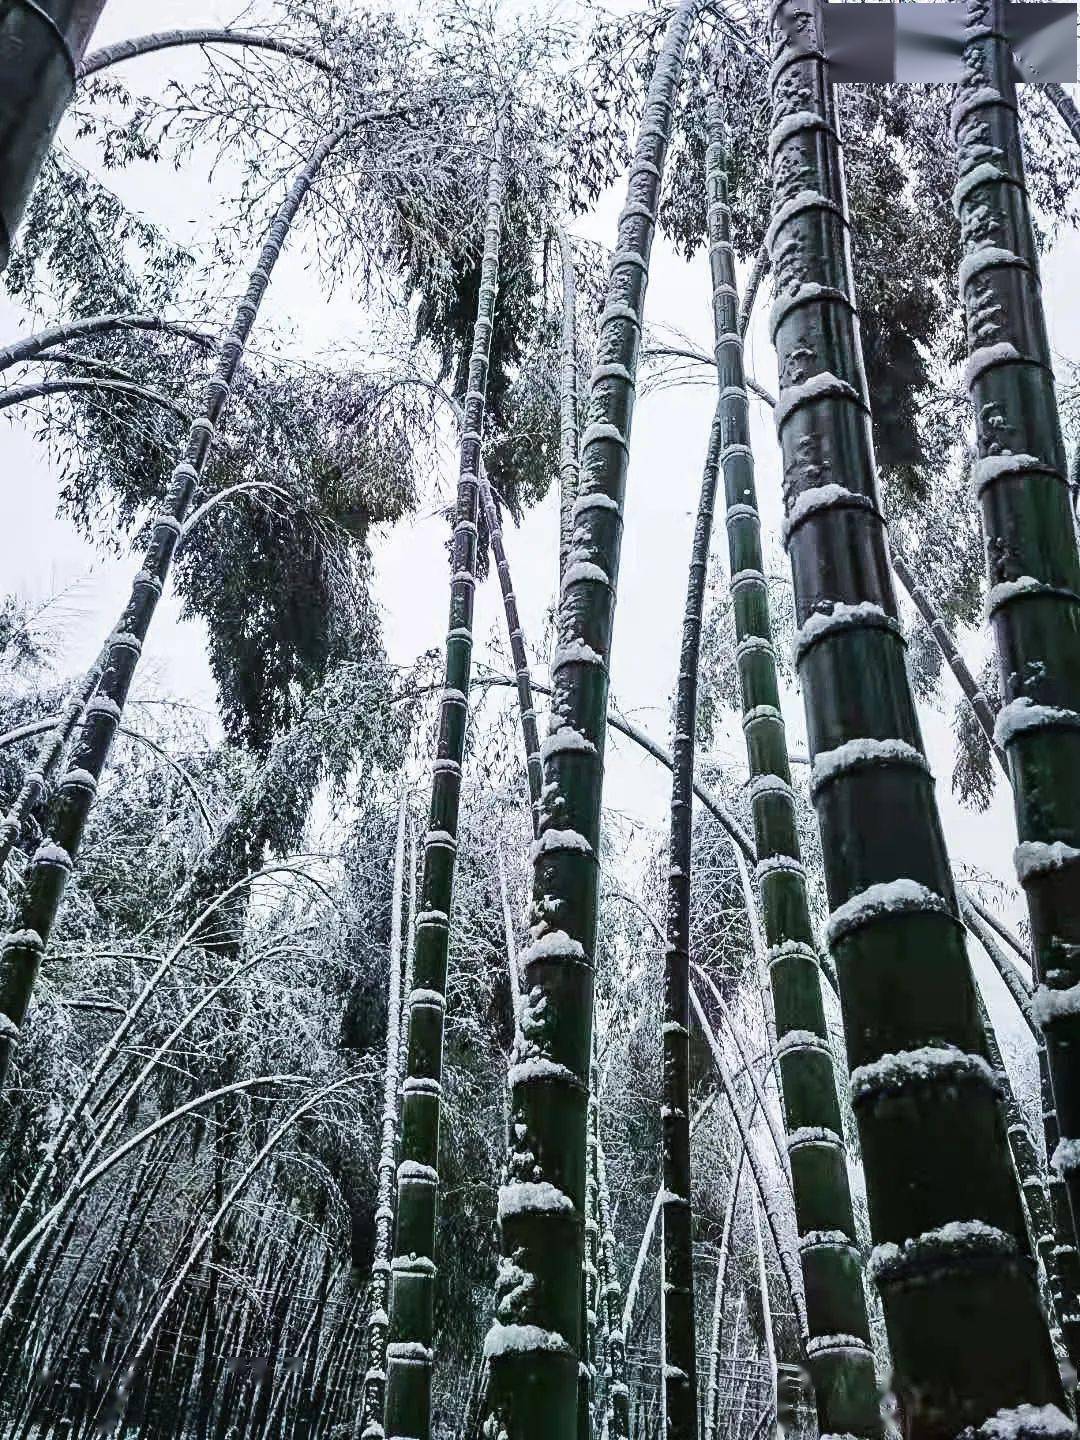 大雪压竹子的图片图片